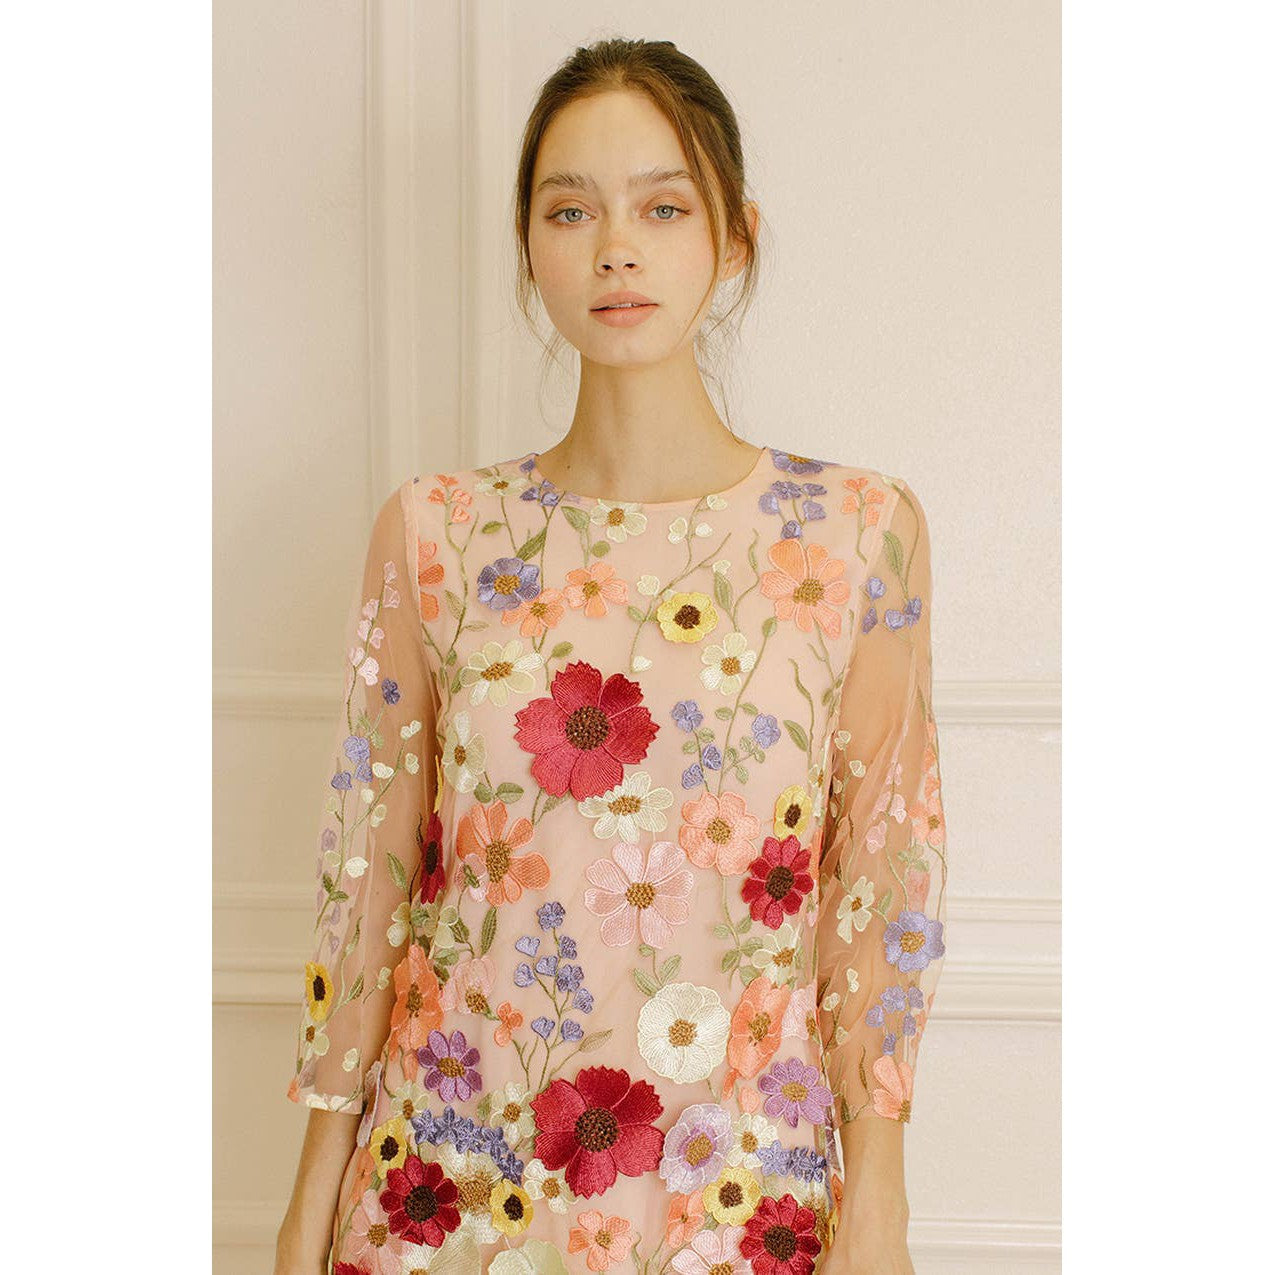 Storia 3-D Multicolor Flowers Floral Appliqué Shift Dress [Sizes SM-M Remaining]